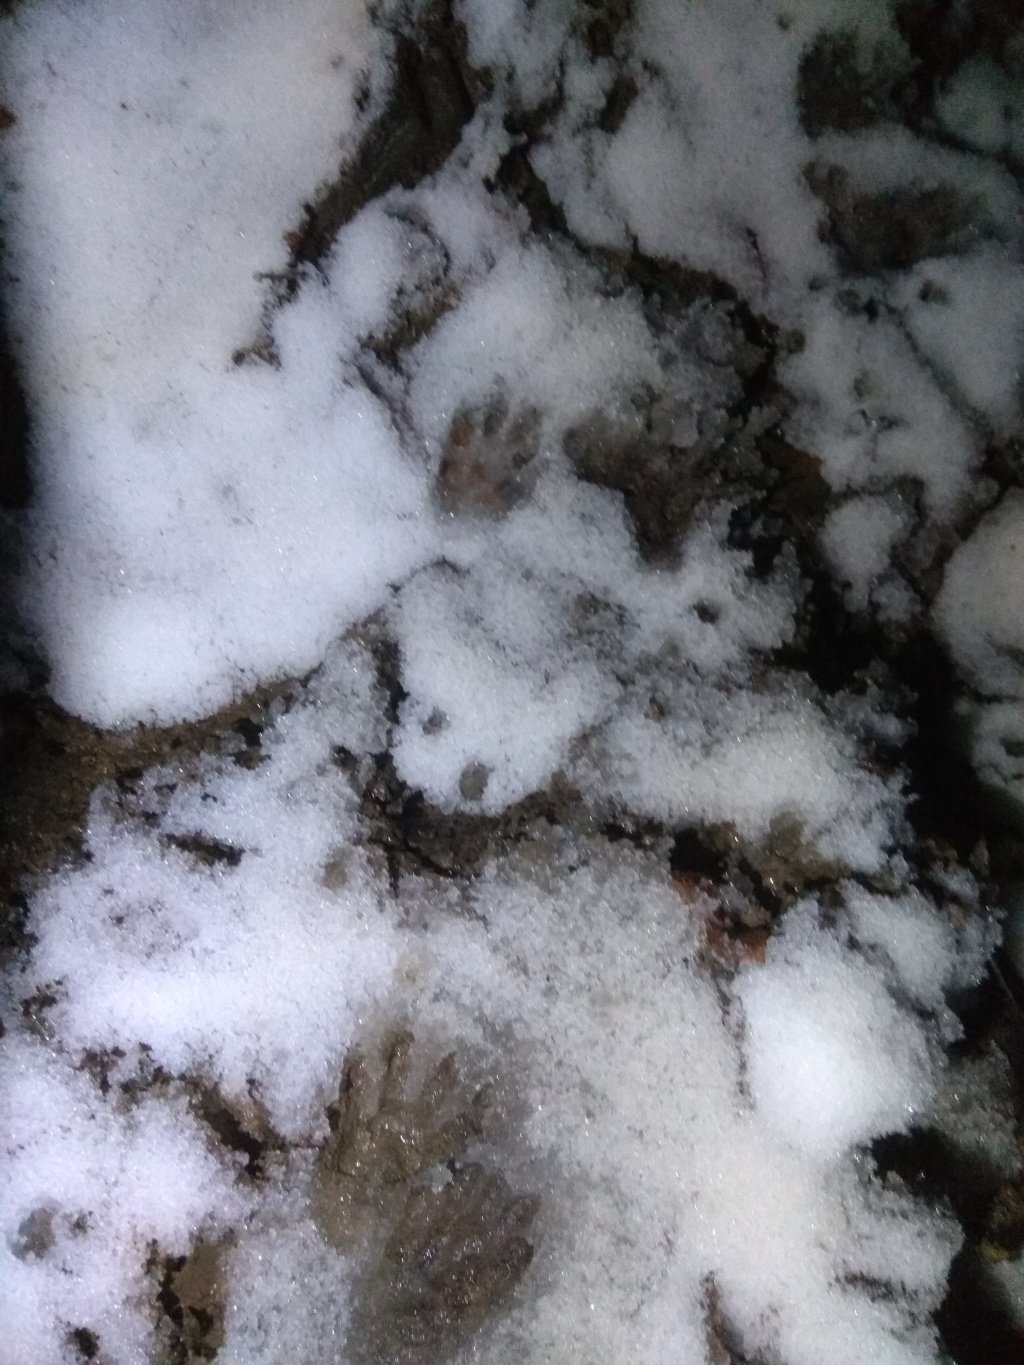 Блог им. ZoozR: Подъем на гору Семеновский шпиль. Из субтропиков в зиму за 2 часа. Сочи.